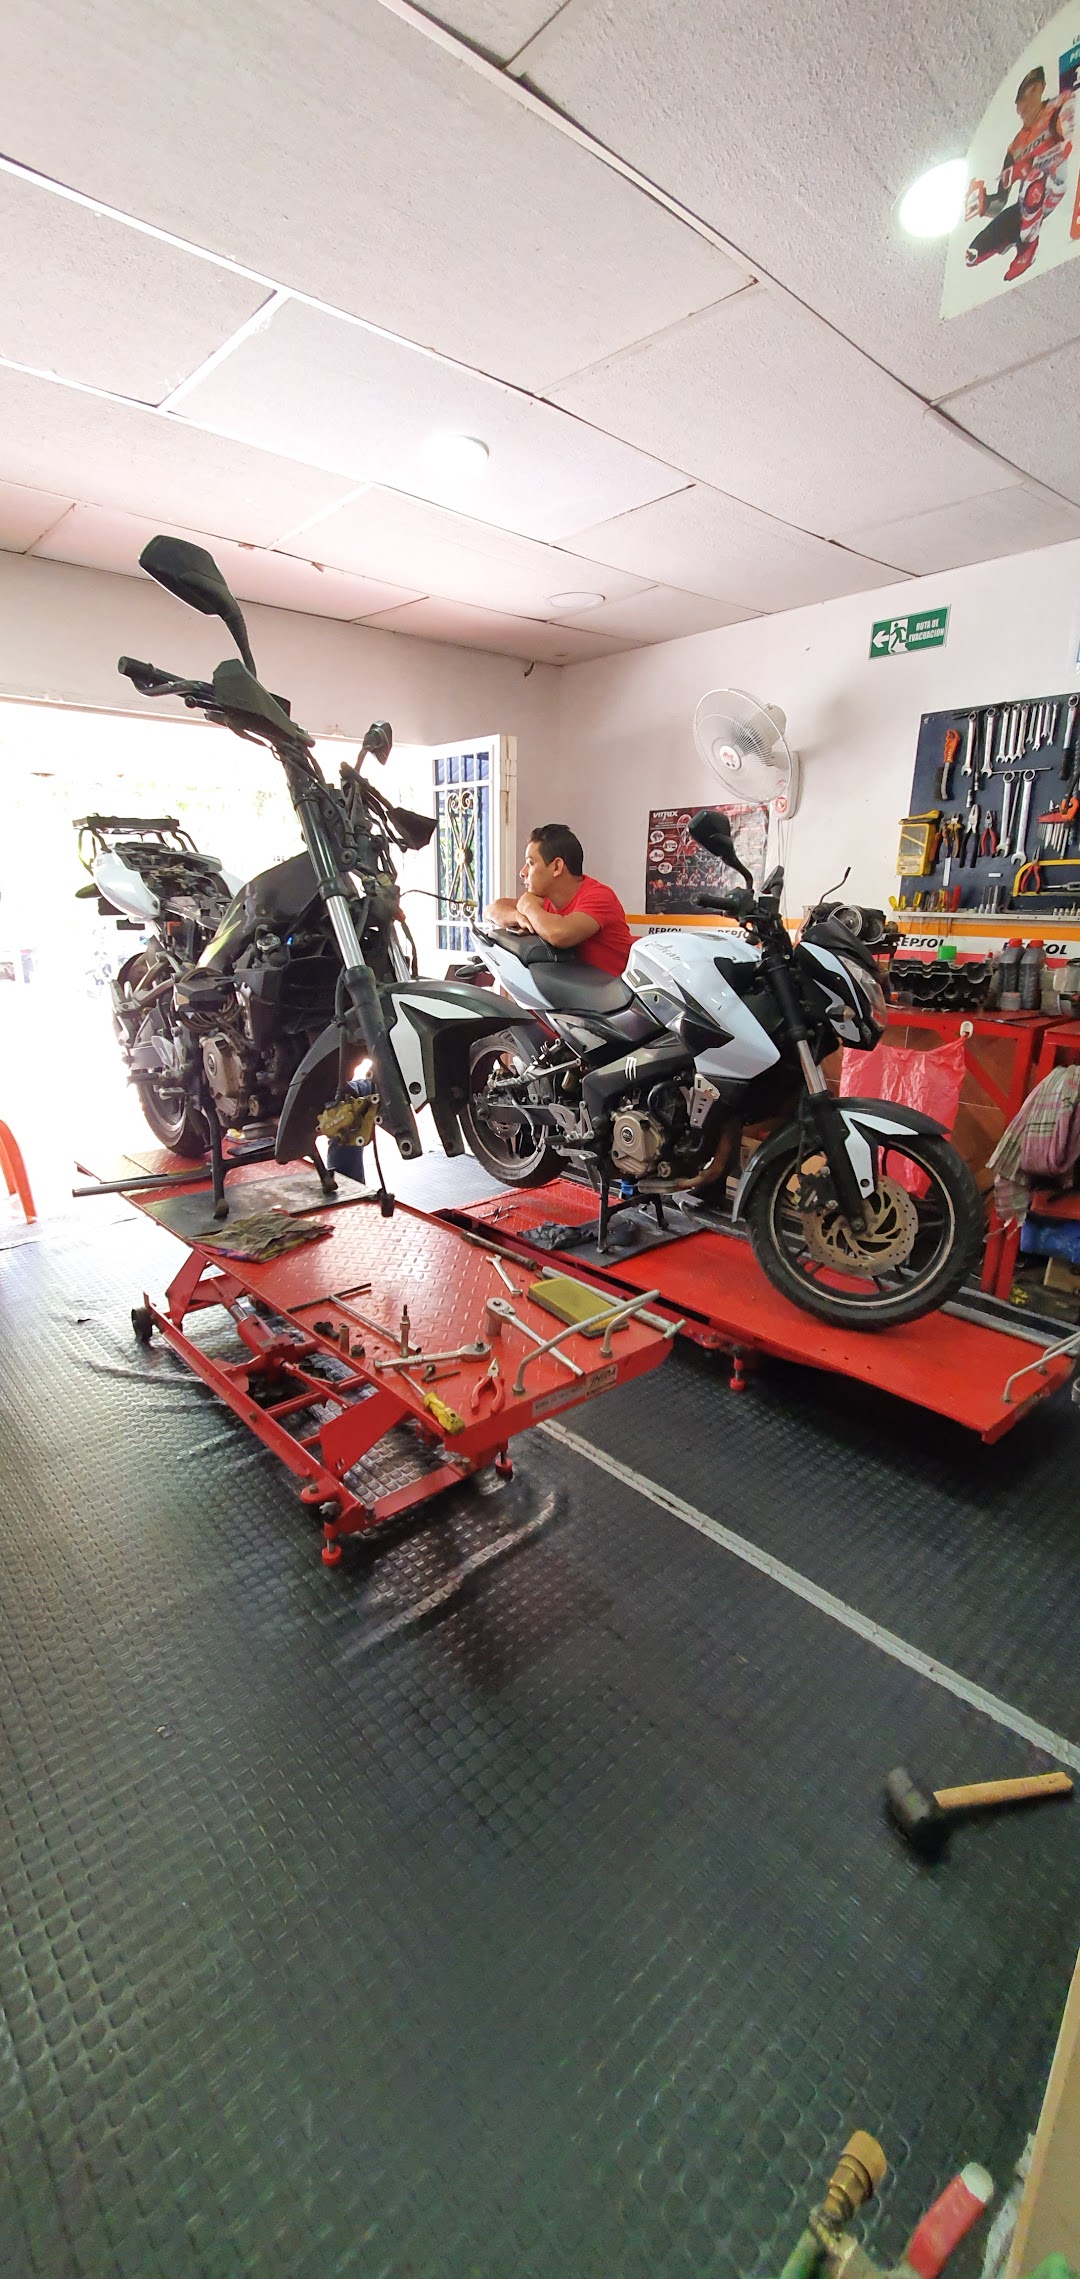 Taller mondol reparaccion y mantenimiento de todo tipo de motos